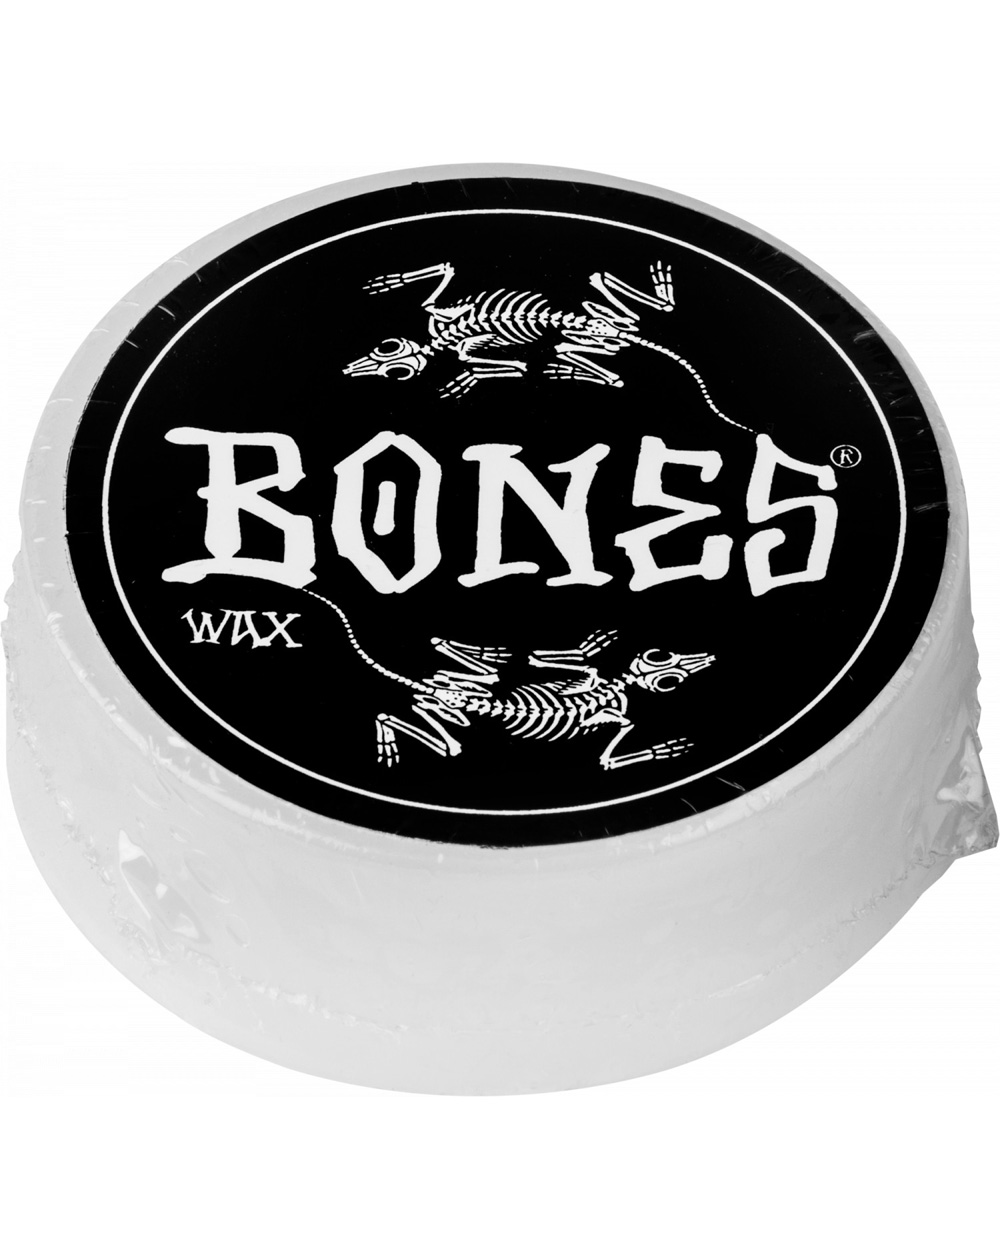 Bones Wheels Cera Skateboard Vato Rax White